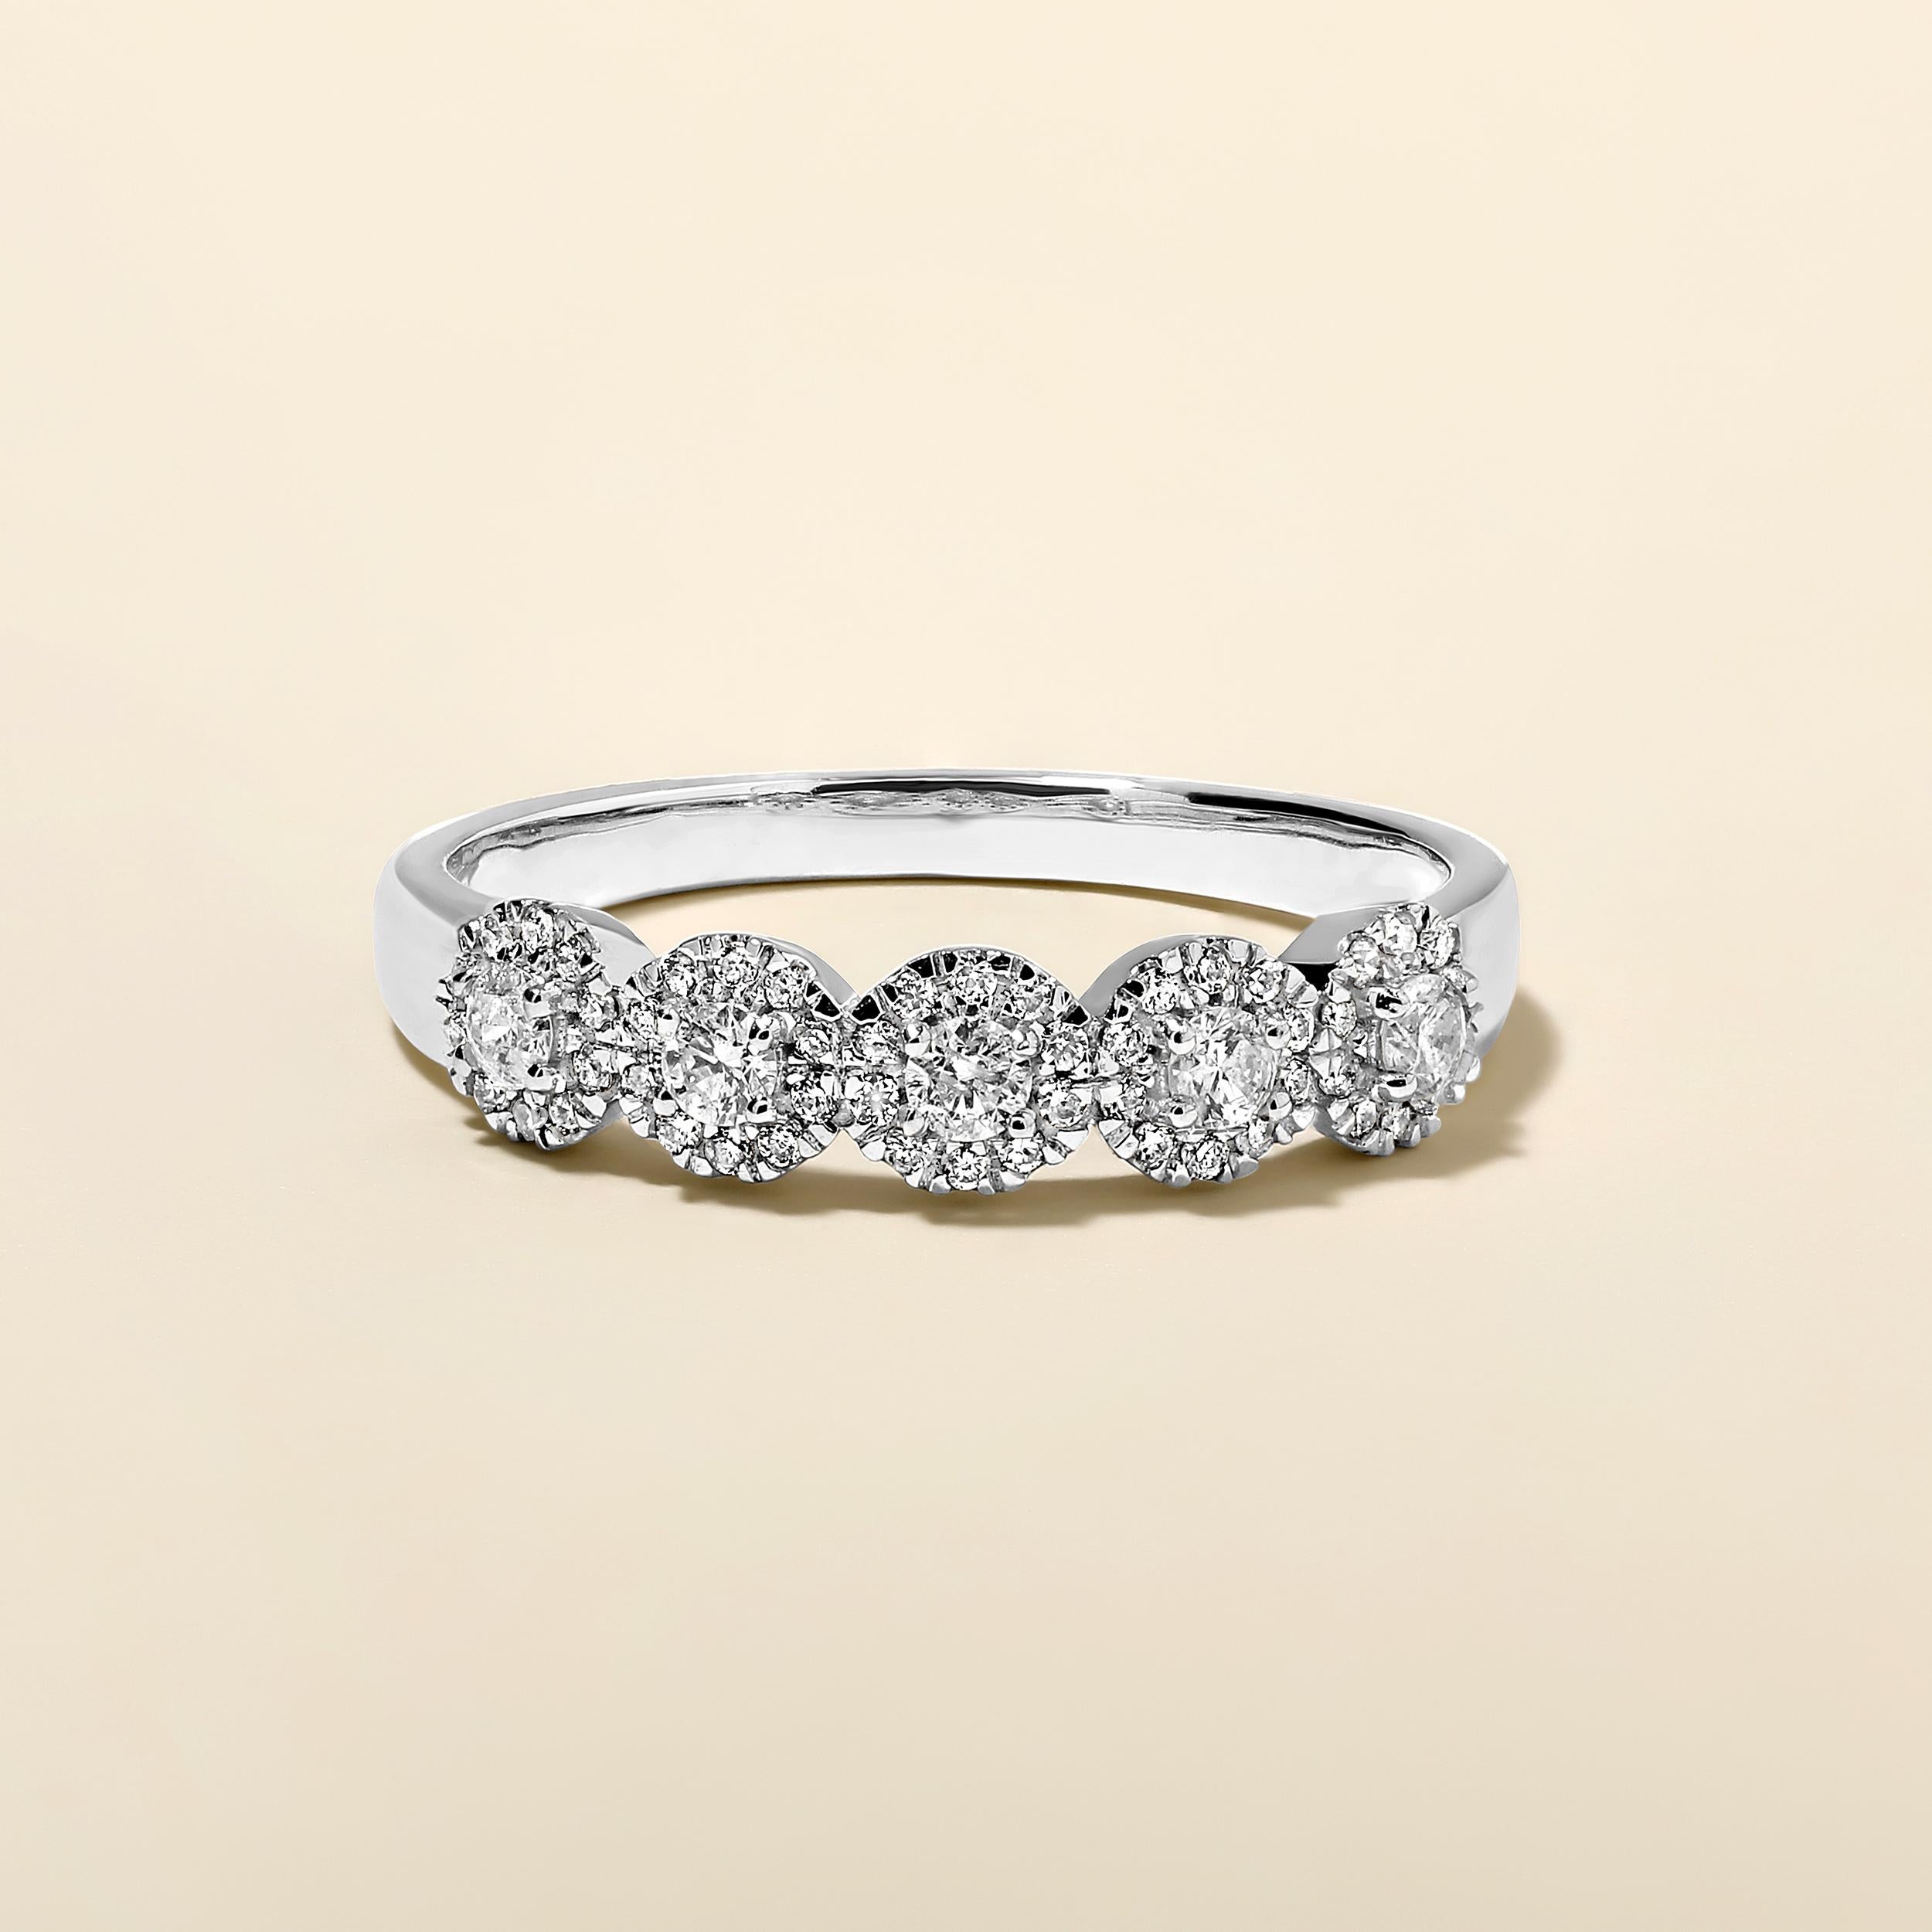 Ring Größe: US 7

Der Ring ist aus 2,54 Gramm 14-karätigem Weißgold gefertigt und enthält 55 runde natürliche Diamanten mit insgesamt 0,34 Karat in der Farbe F-G und der Reinheit I1-I2.

ZEITGENÖSSISCHE UND ZEITLOSE ESSENZ: Gefertigt aus 14 Karat/18